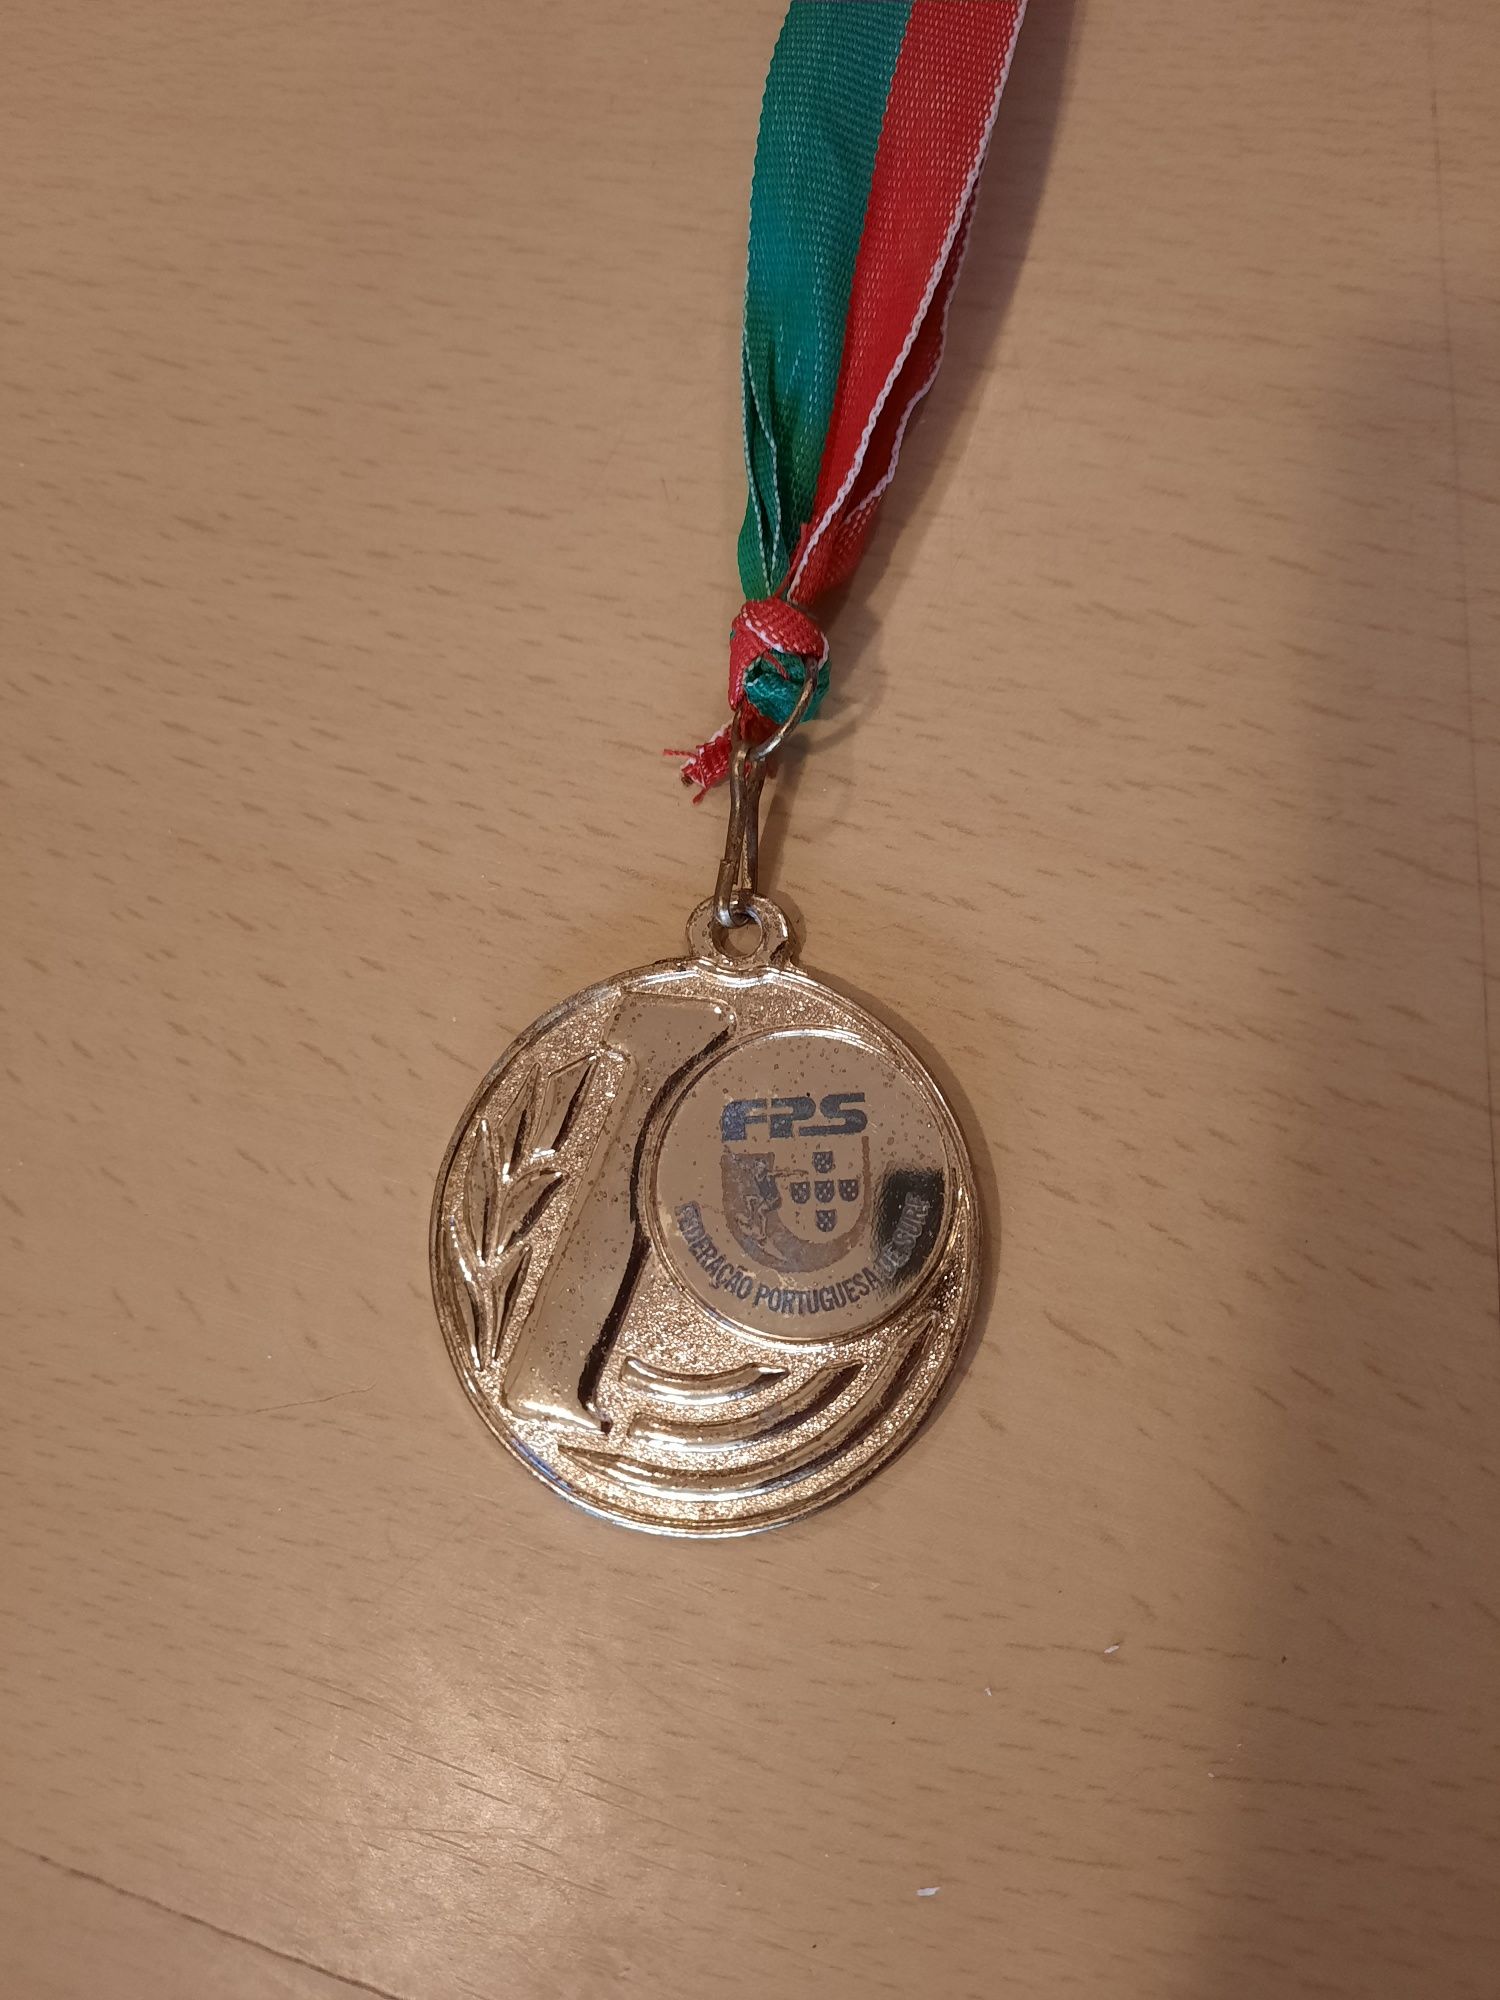 Medalha 1 classificado da taça de Portugal